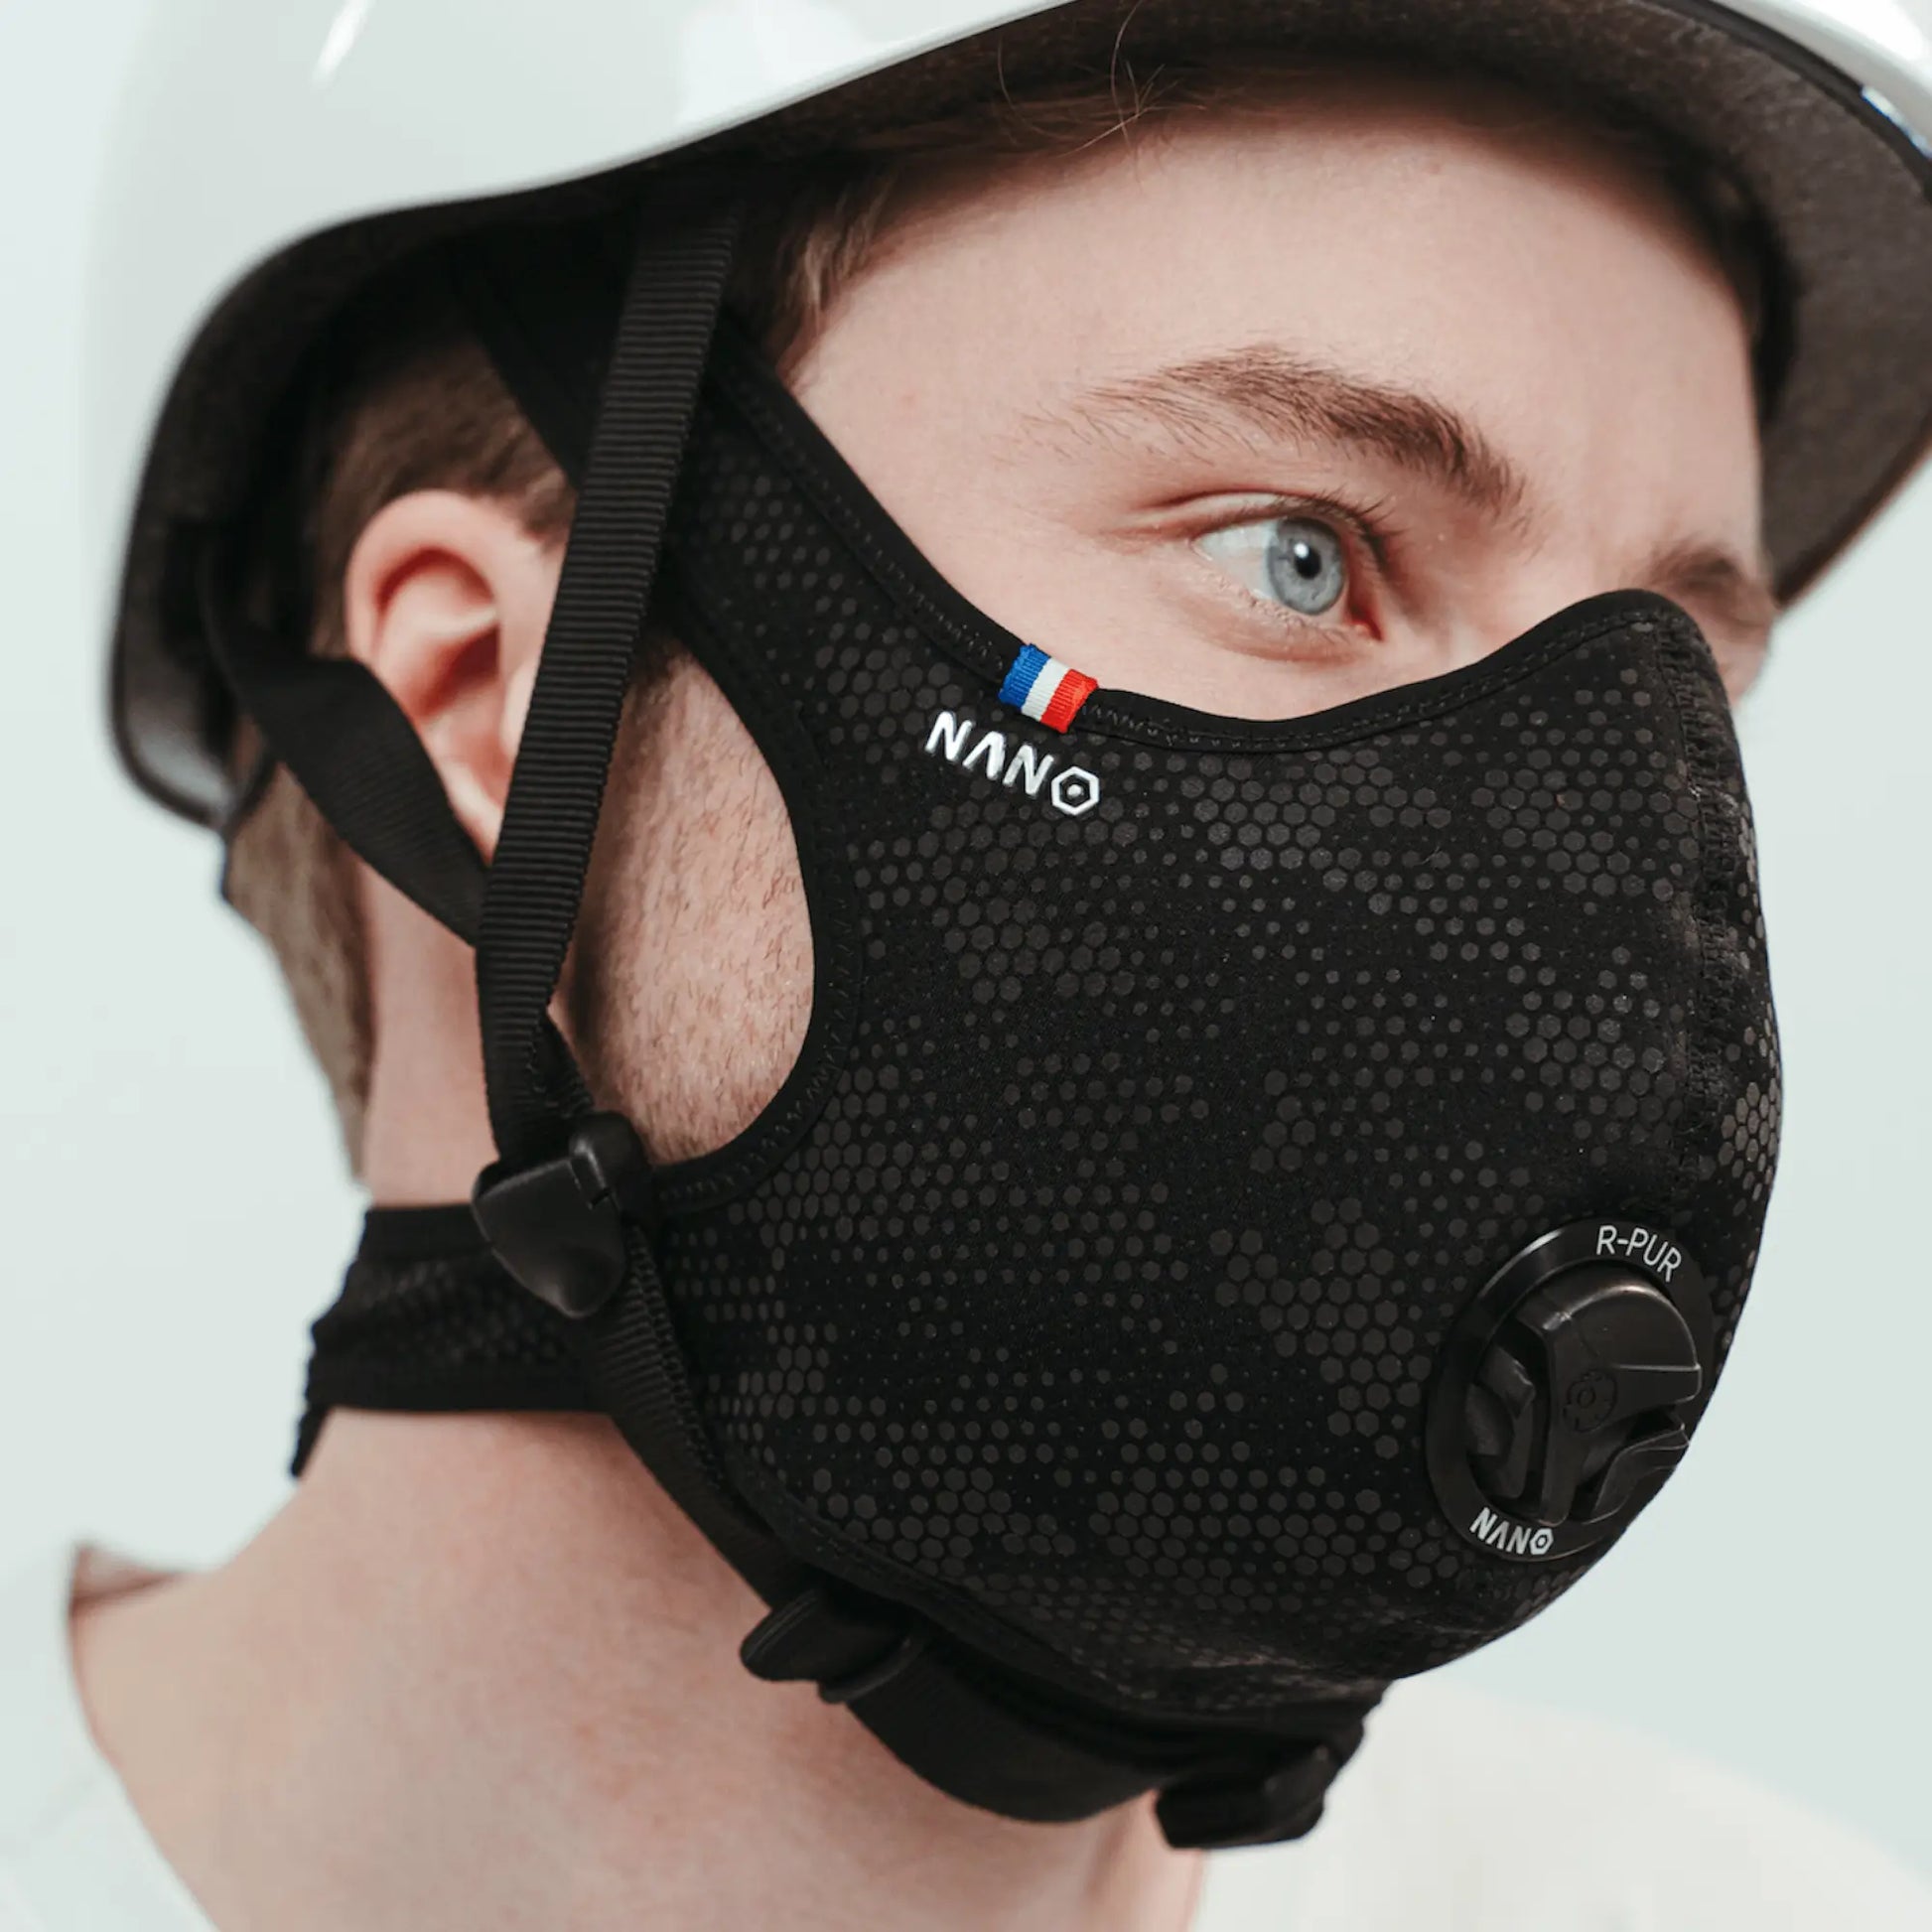 Protégez vous de la pollution : masque anti-pollution et anti-pollen Wair